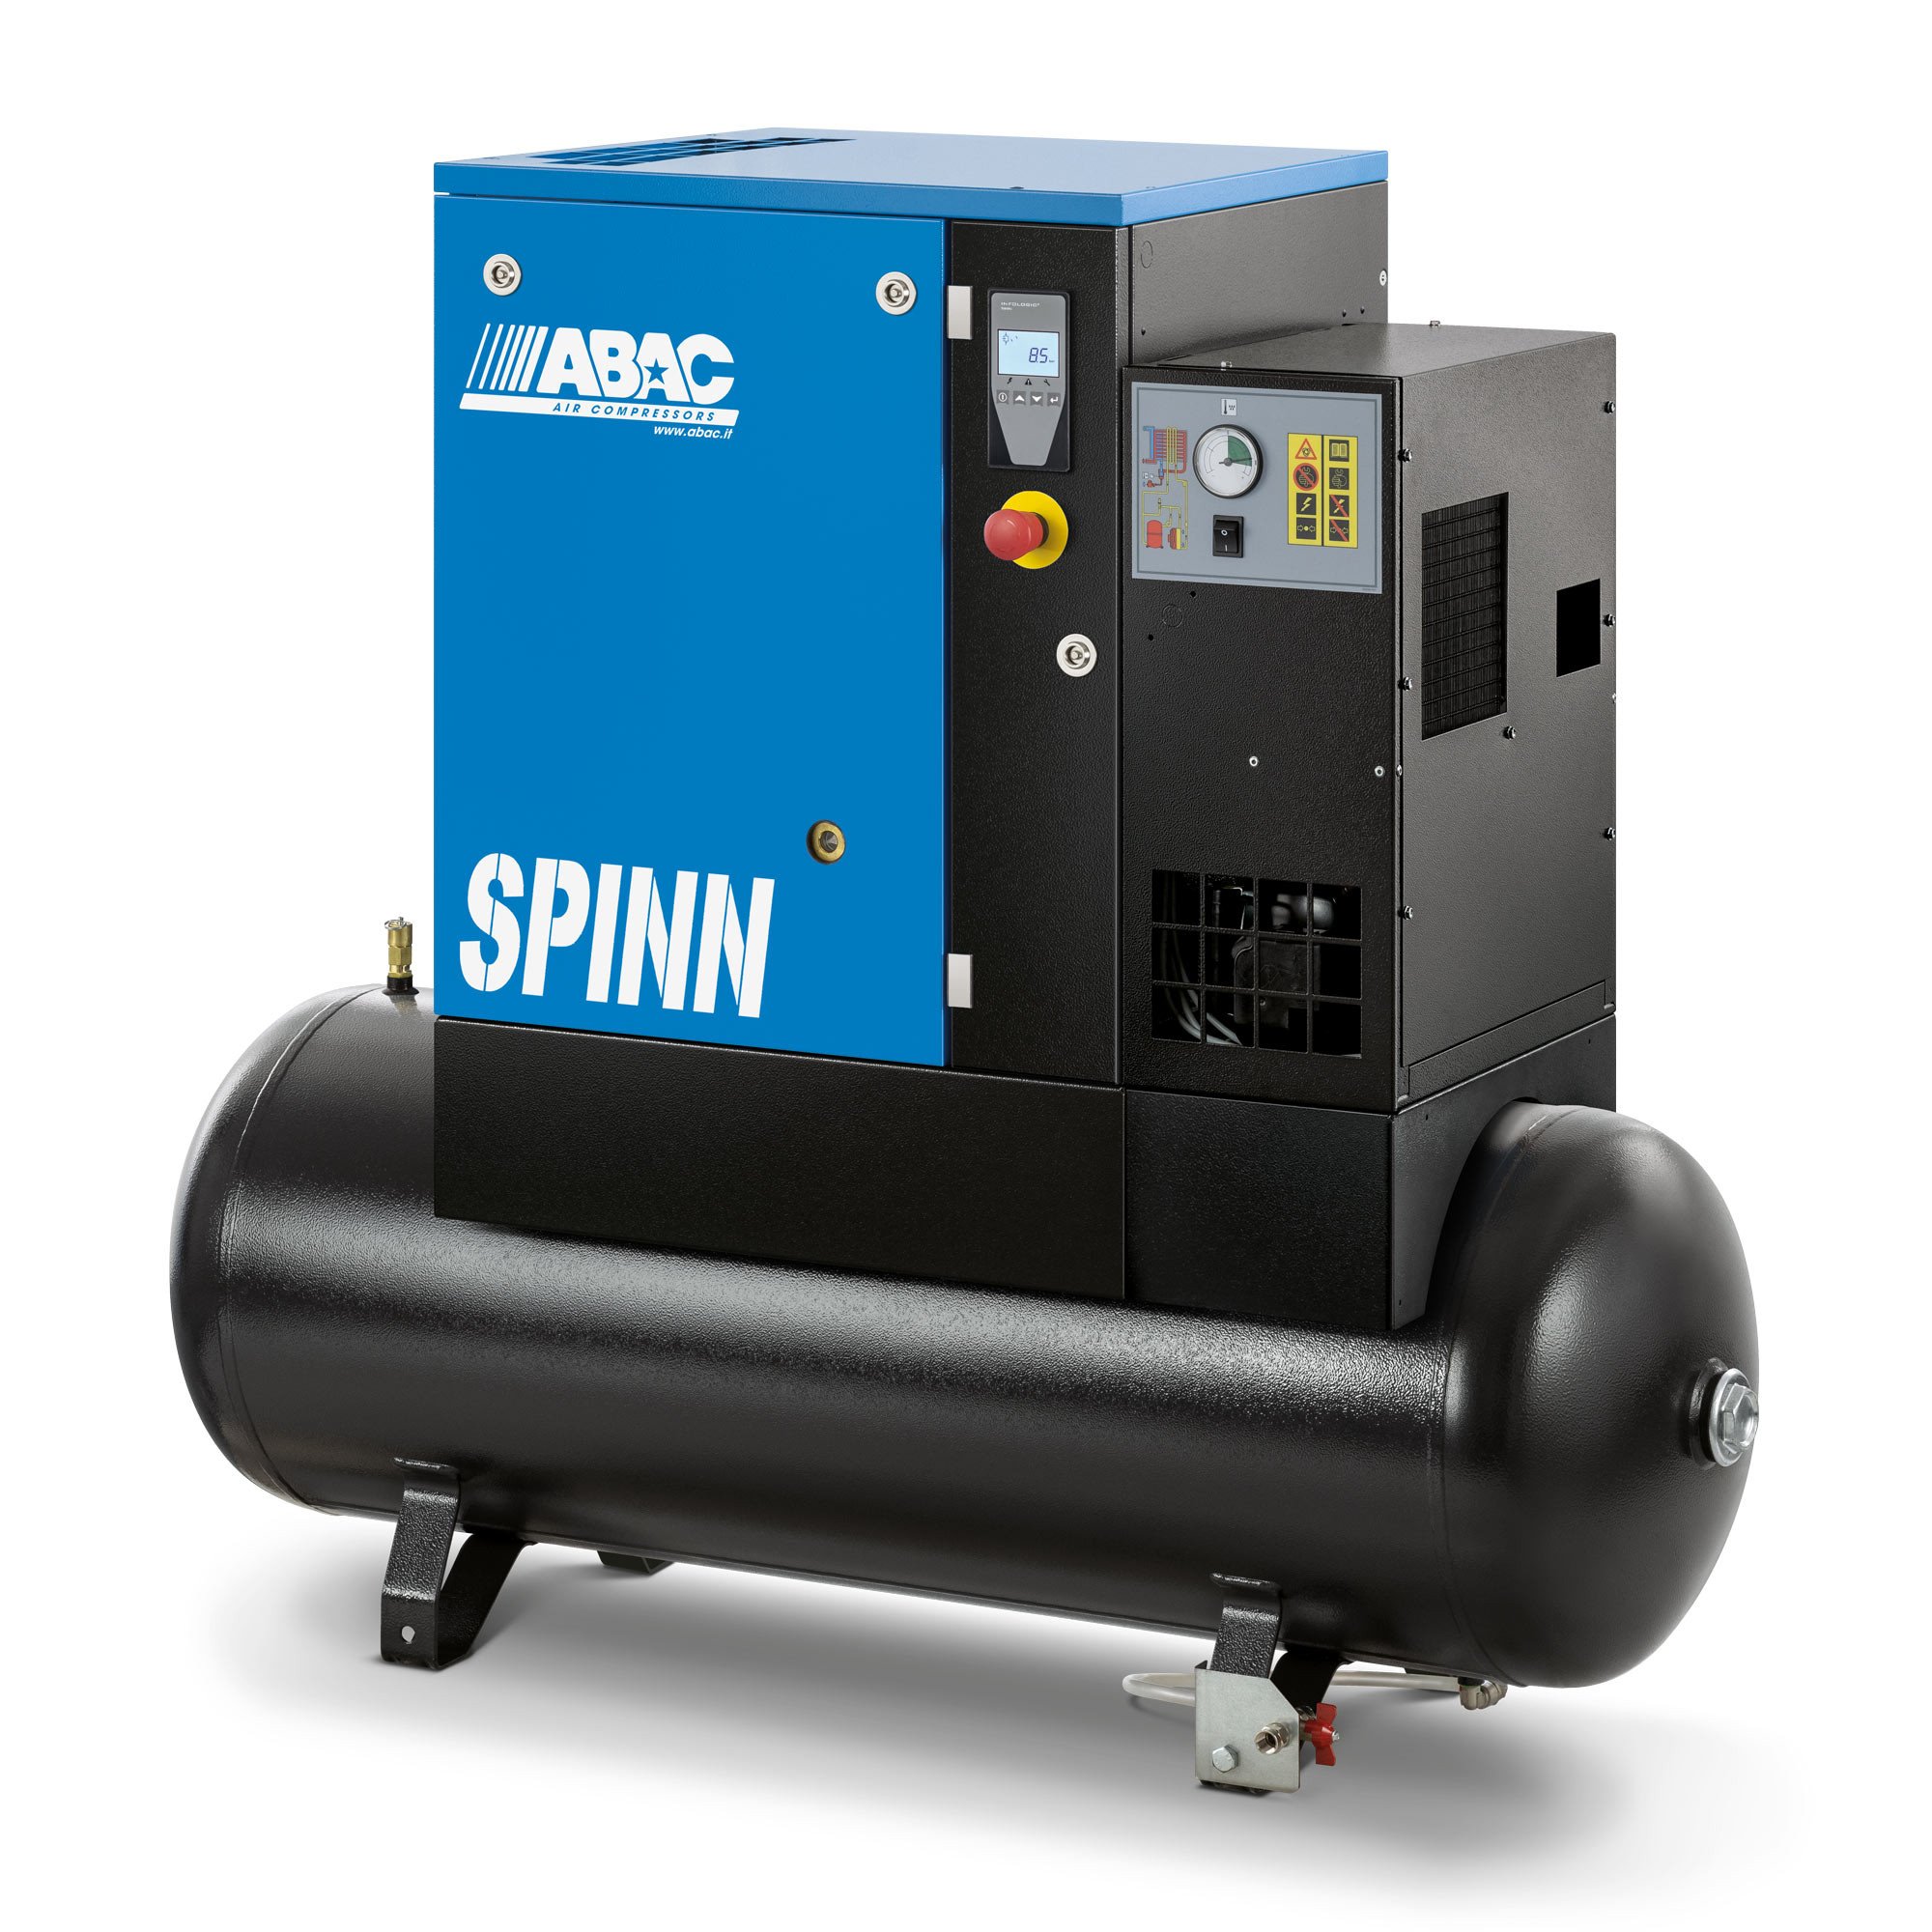 螺杆式空气压缩机- spinn3e10 400/50K 200 E CE接收器，安装干燥机200L 12.9CFM 10Bar 4HP